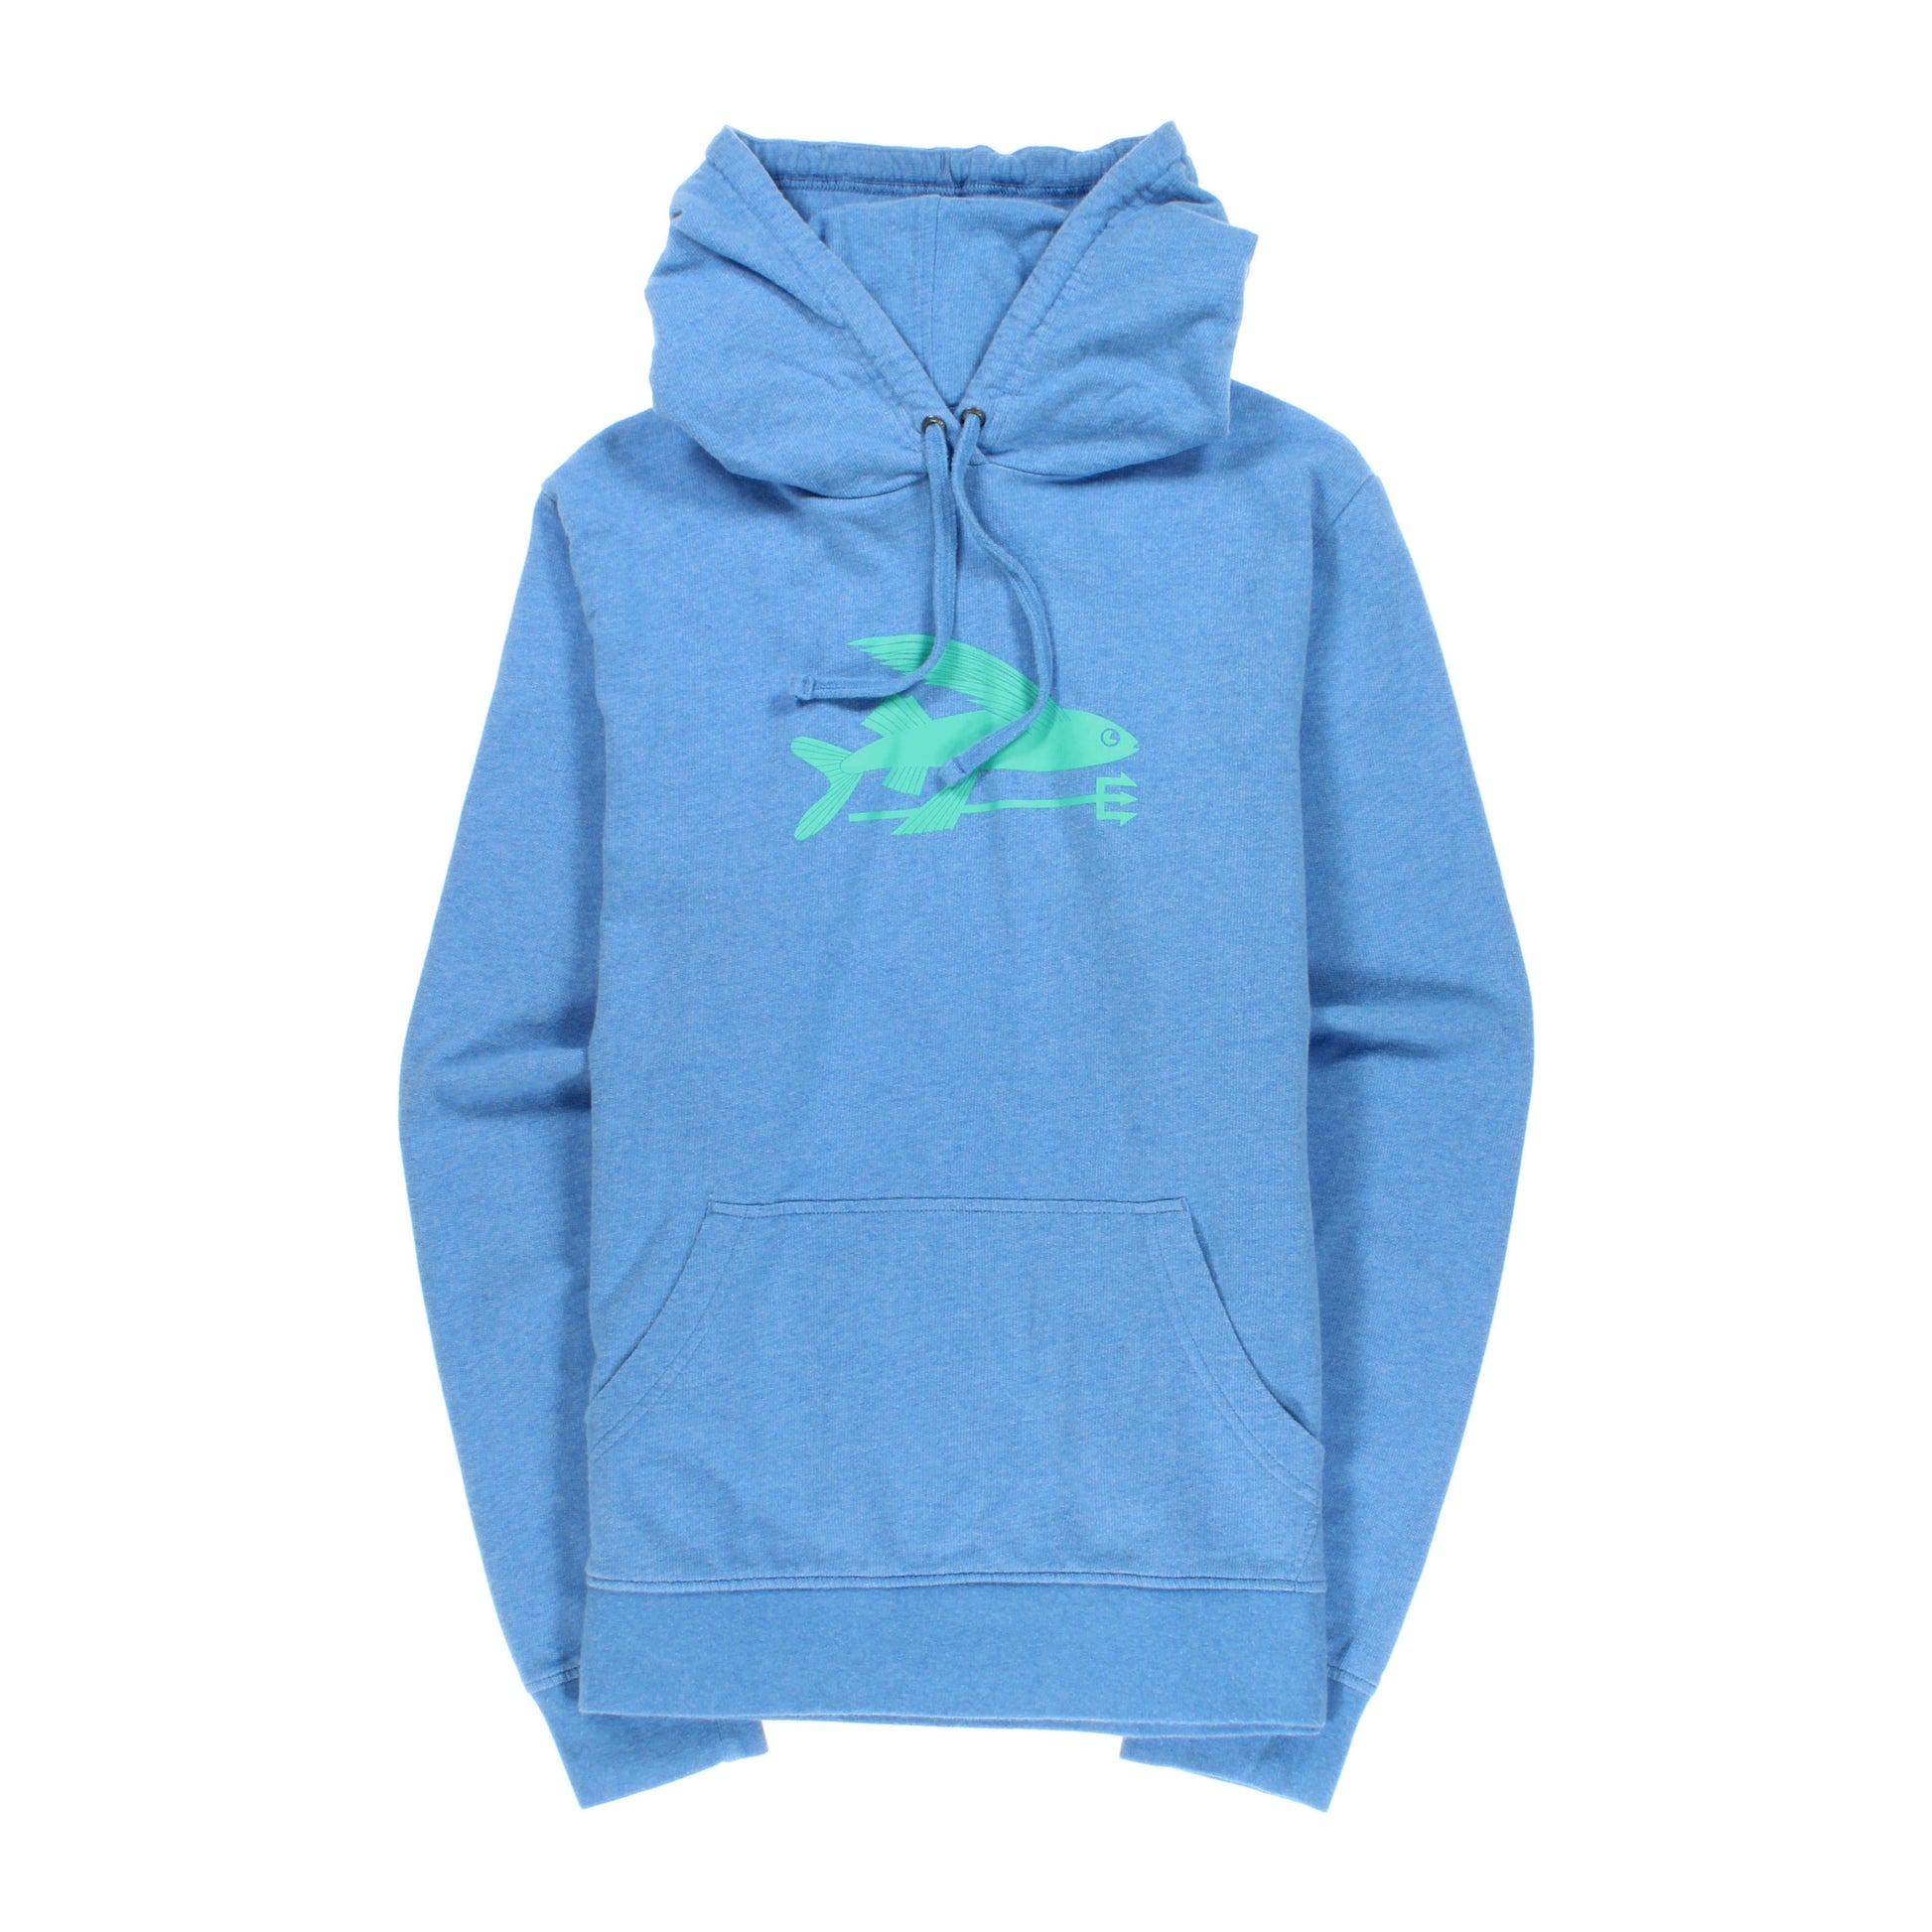 Patagonia Flying Fish Lightweight Full-zip Hooded Sweatshirt in